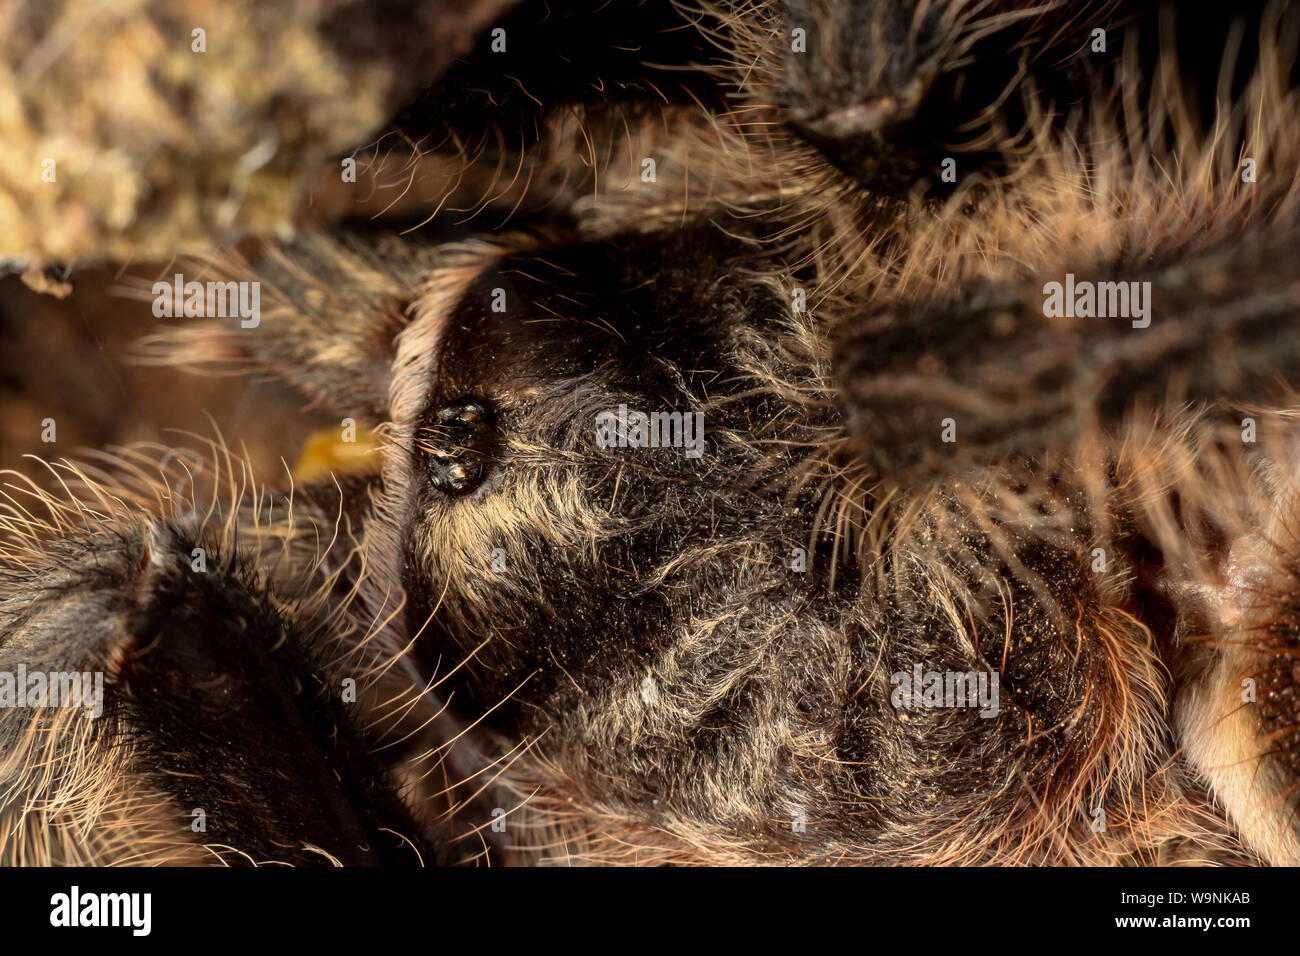 Close-up of a pet tarantula, brazilian Grammostola Stock Photo